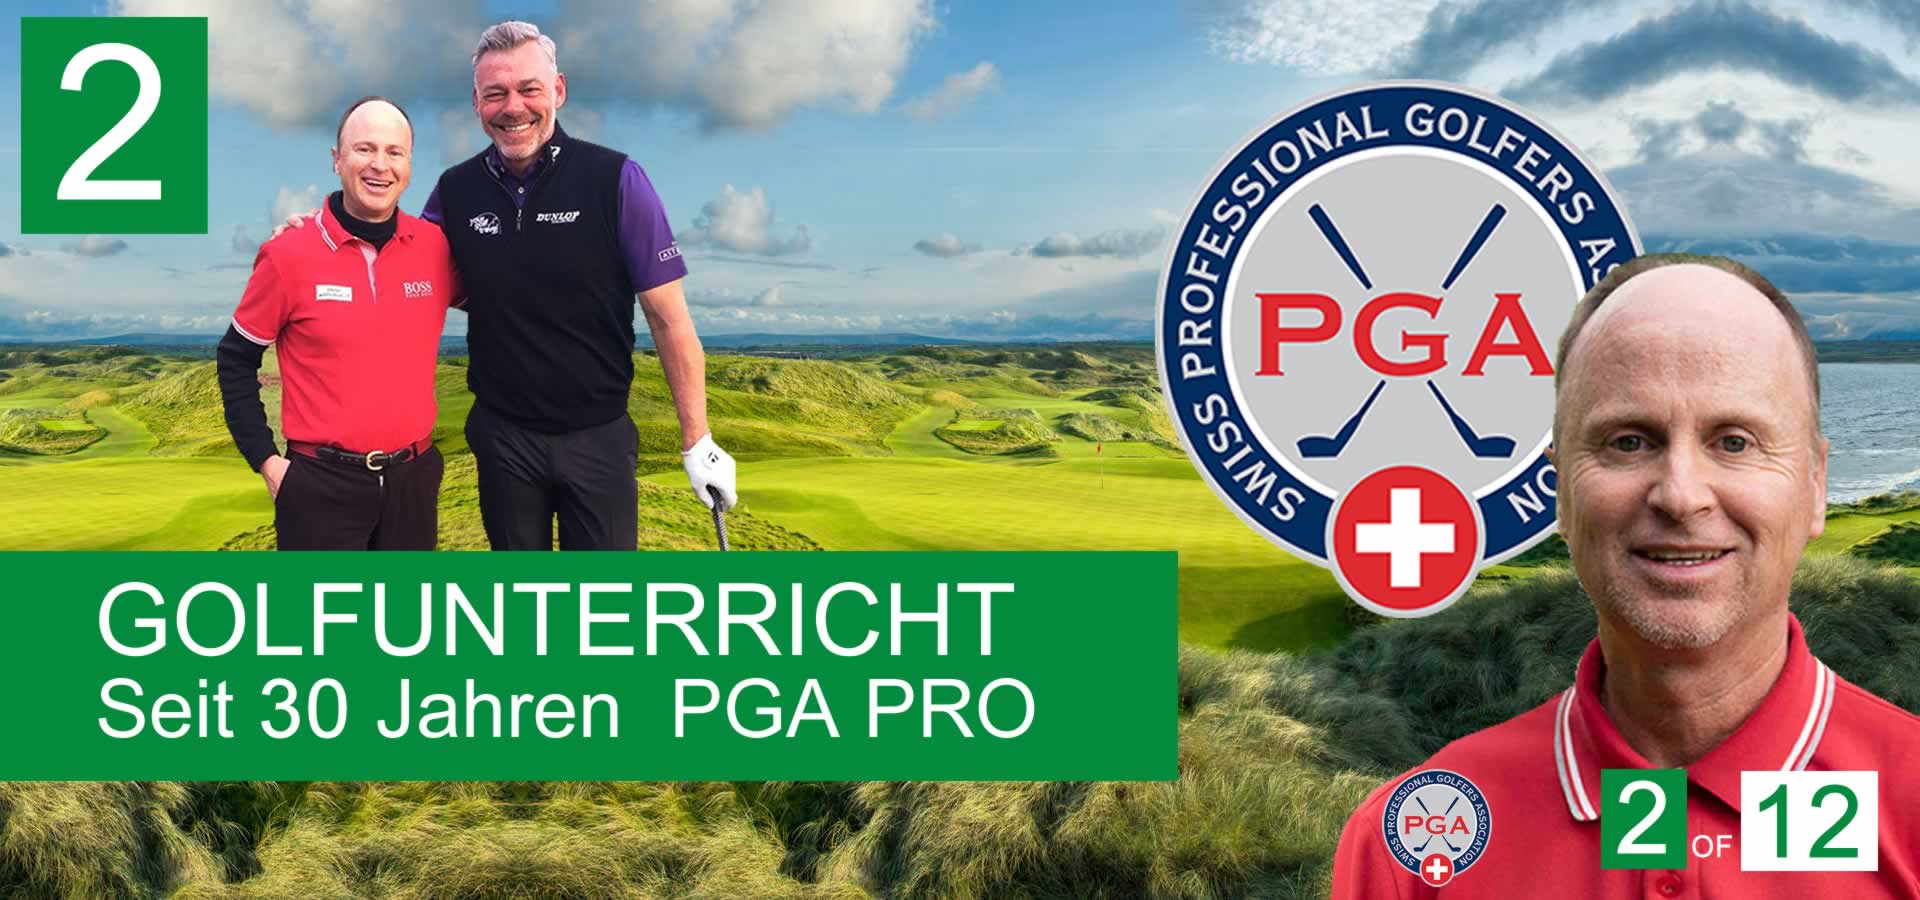 02-Golfstunden-Golfleher-Golfschule-Zuerich-Golfpro-Schweiz-Rombaldi-Thierry